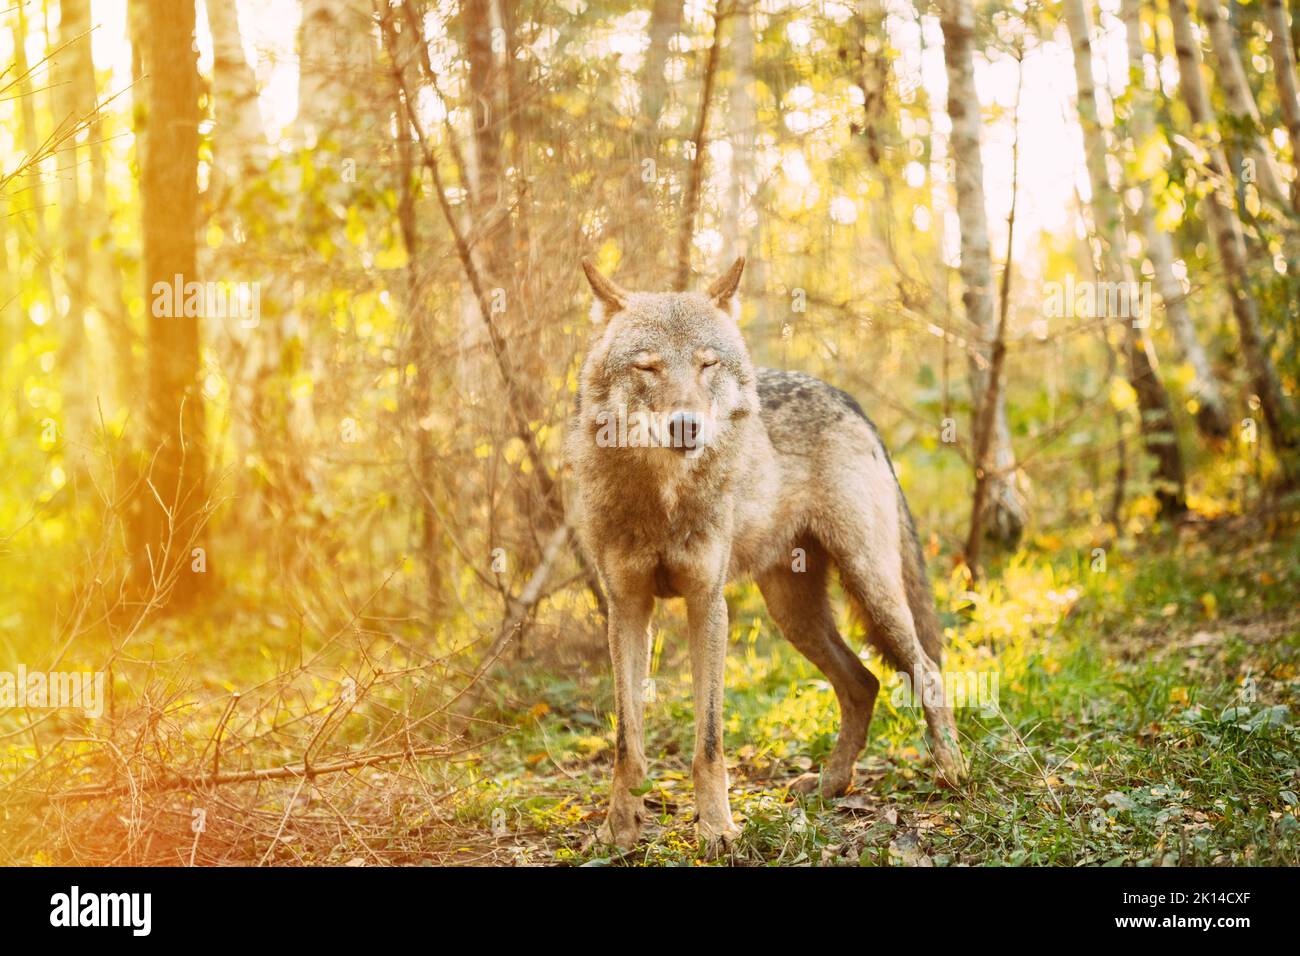 Eurasischer Wolf, Wissenschaftlicher Name - Canis Lupus In Natürlicher Umgebung. Wald In Der Herbstsaison. Natürlicher Lebensraum. Grauer Oder Grauer Wolf, Auch Bekannt Als Stockfoto